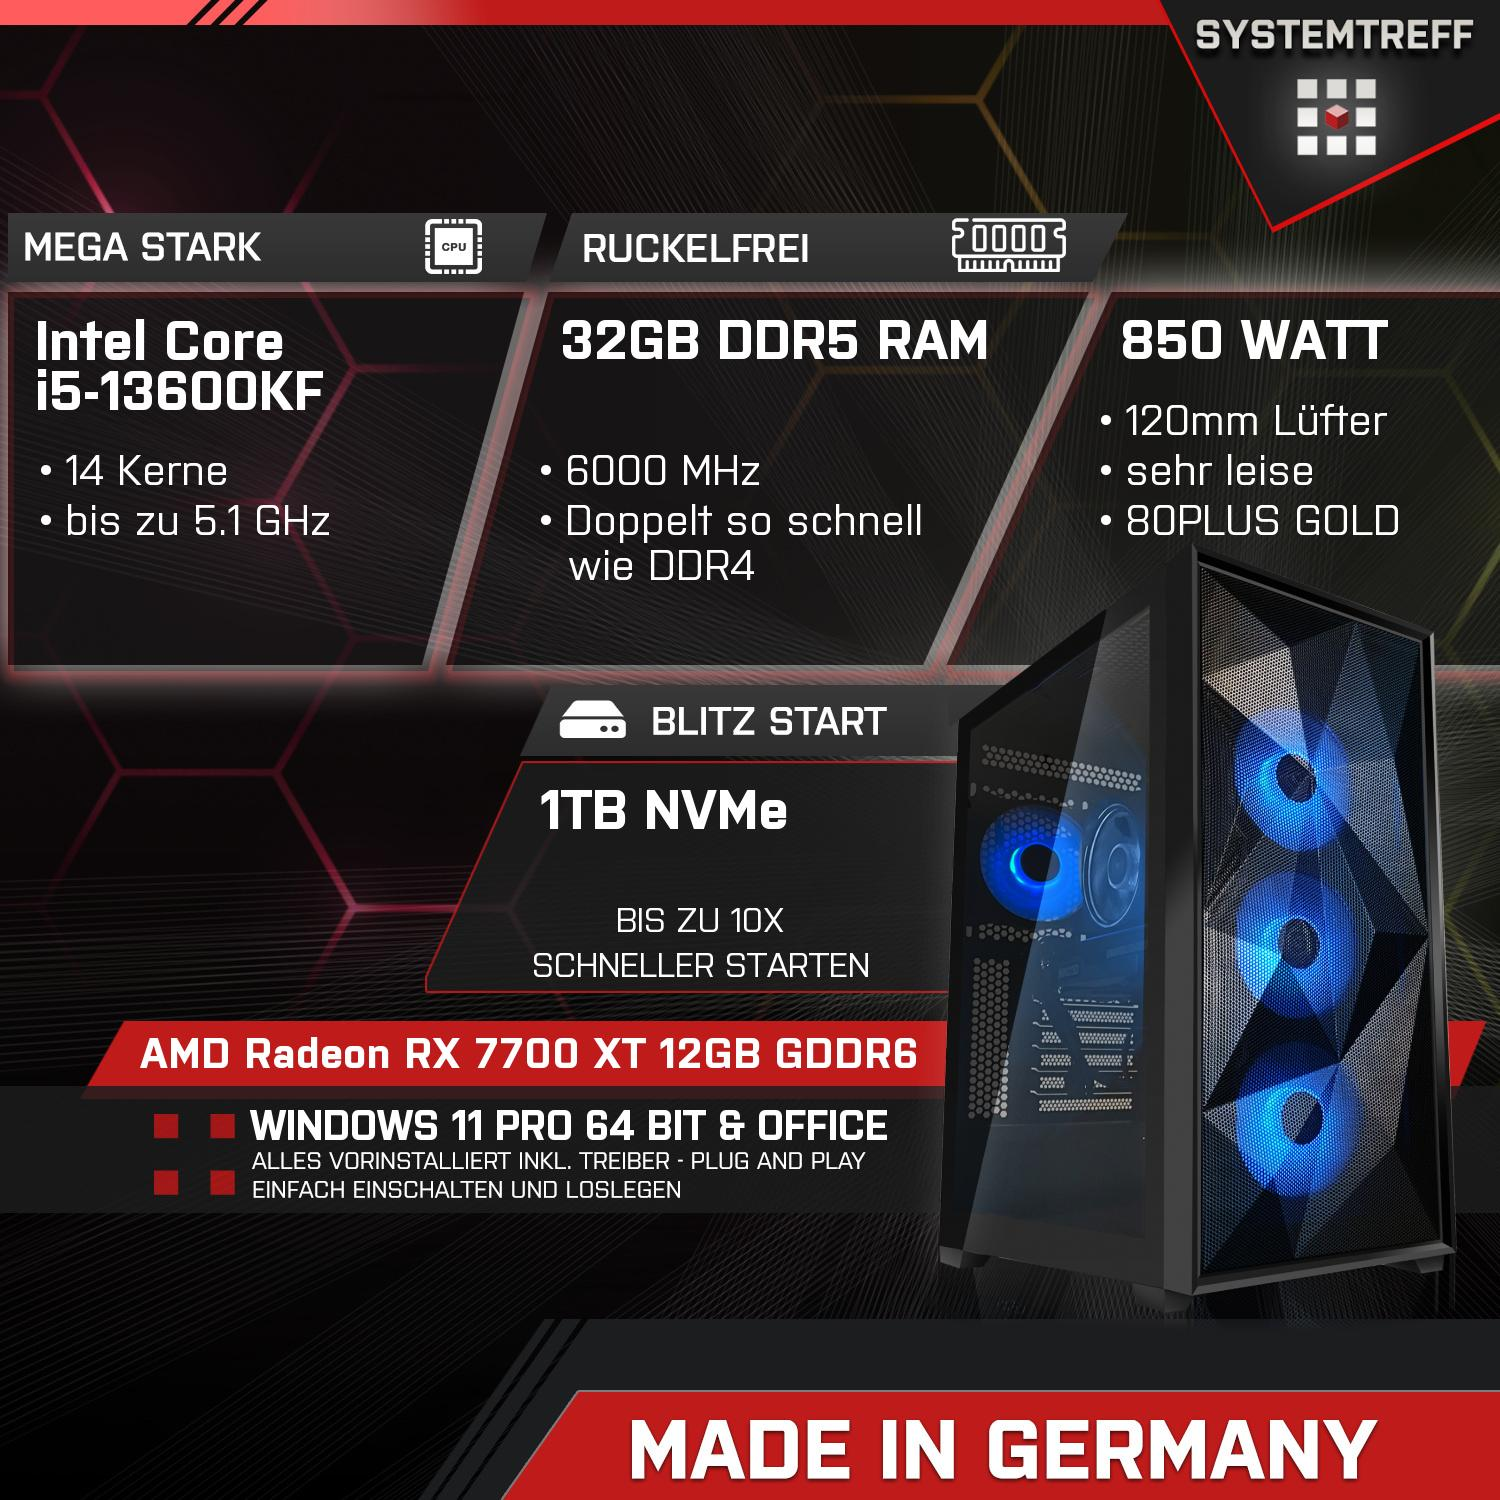 SYSTEMTREFF Gaming Komplett GB Intel i5-13600KF Core 12 RAM, Komplett Prozessor, 32 mSSD, GB mit PC GB 1000 i5-13600KF